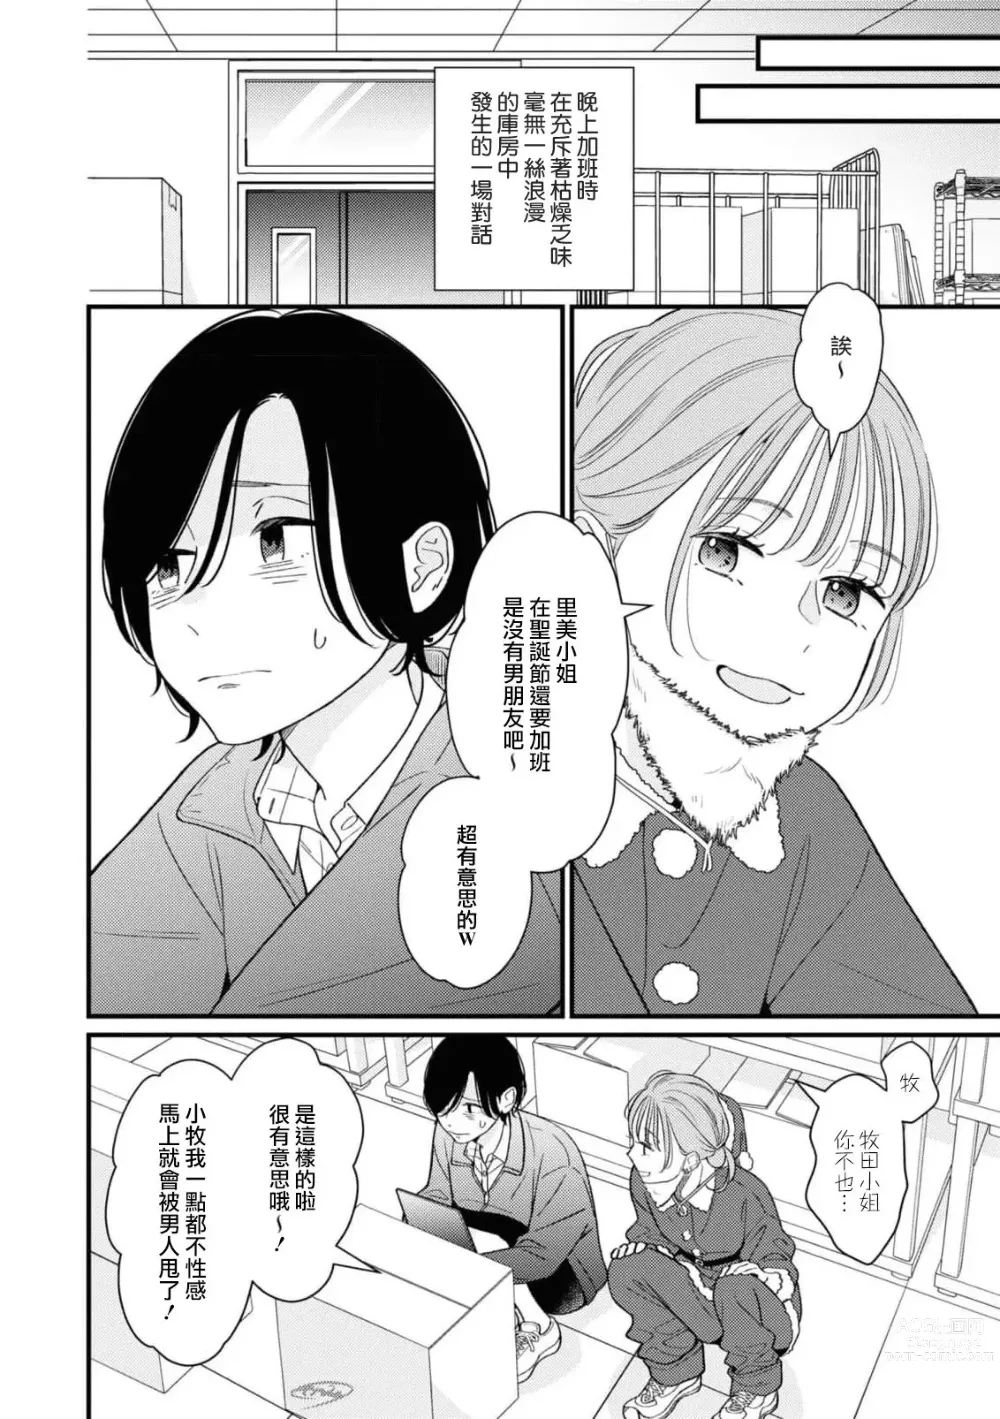 Page 2 of manga 延长30分钟的浪漫